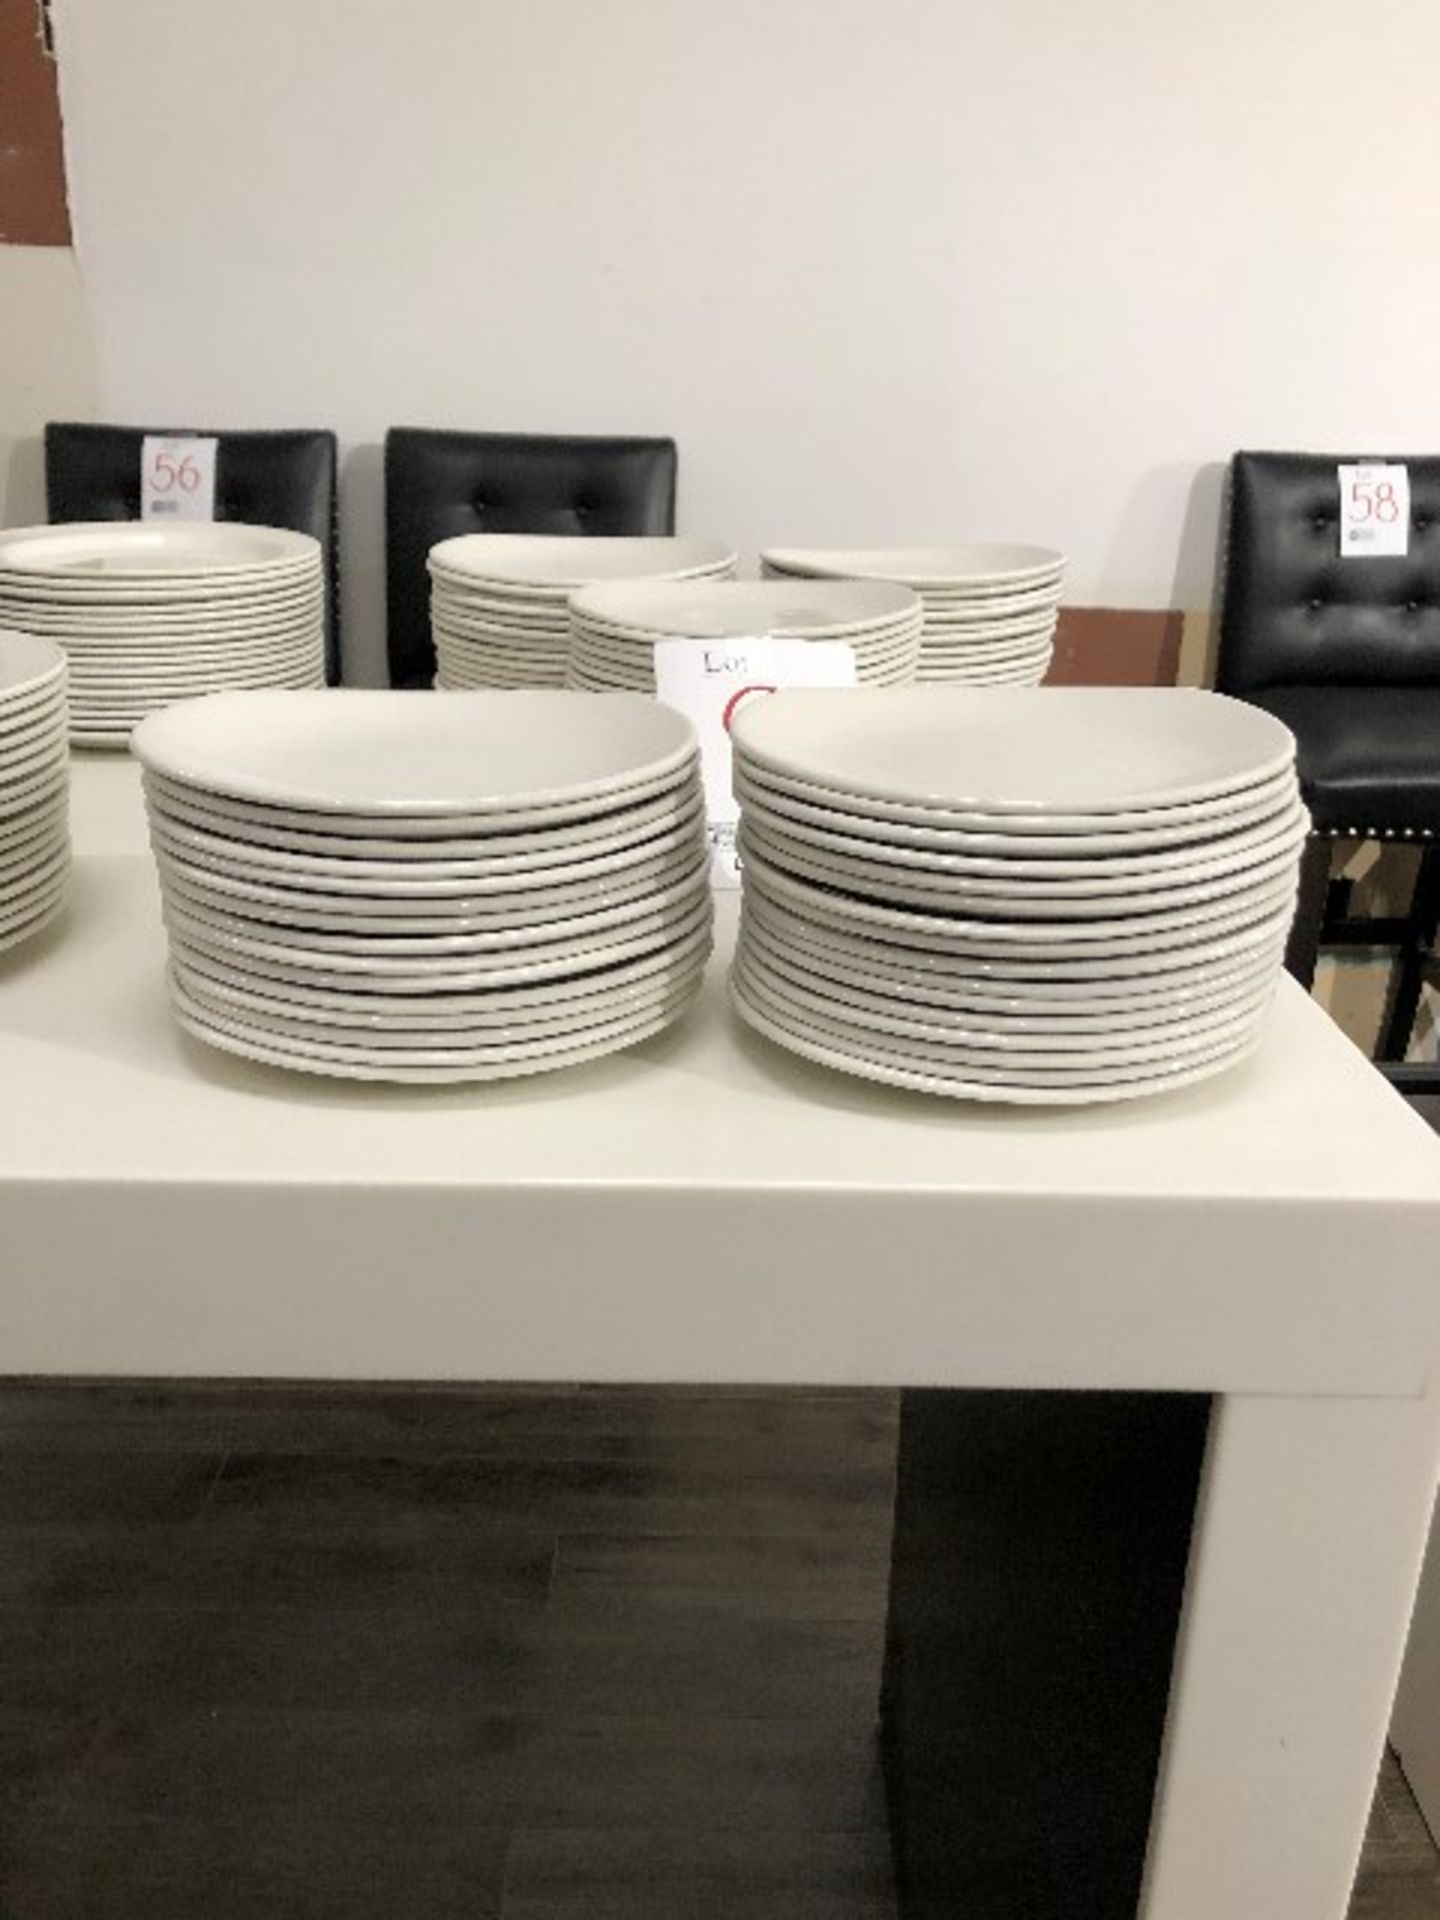 Appetizer plates, 8”x7”, 32 pcs (Lot)